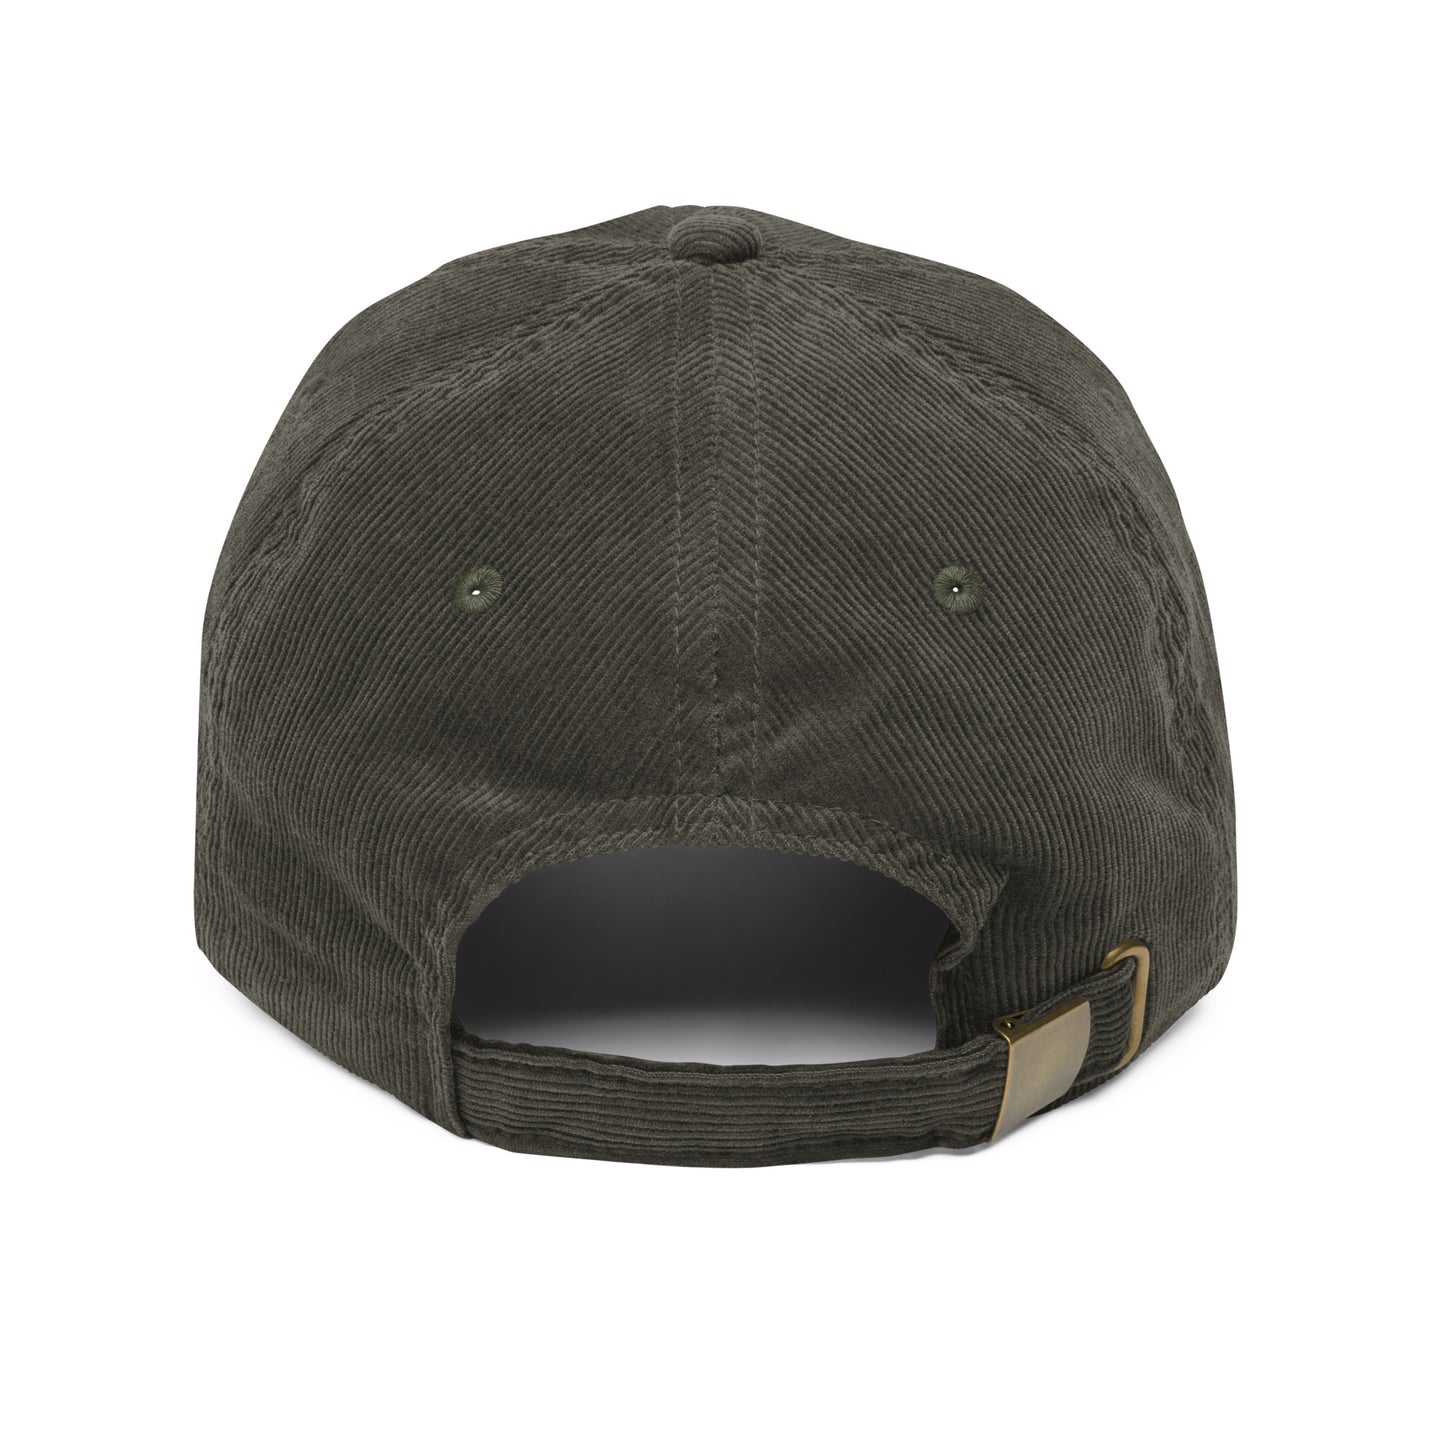 Koi - Vintage corduroy cap